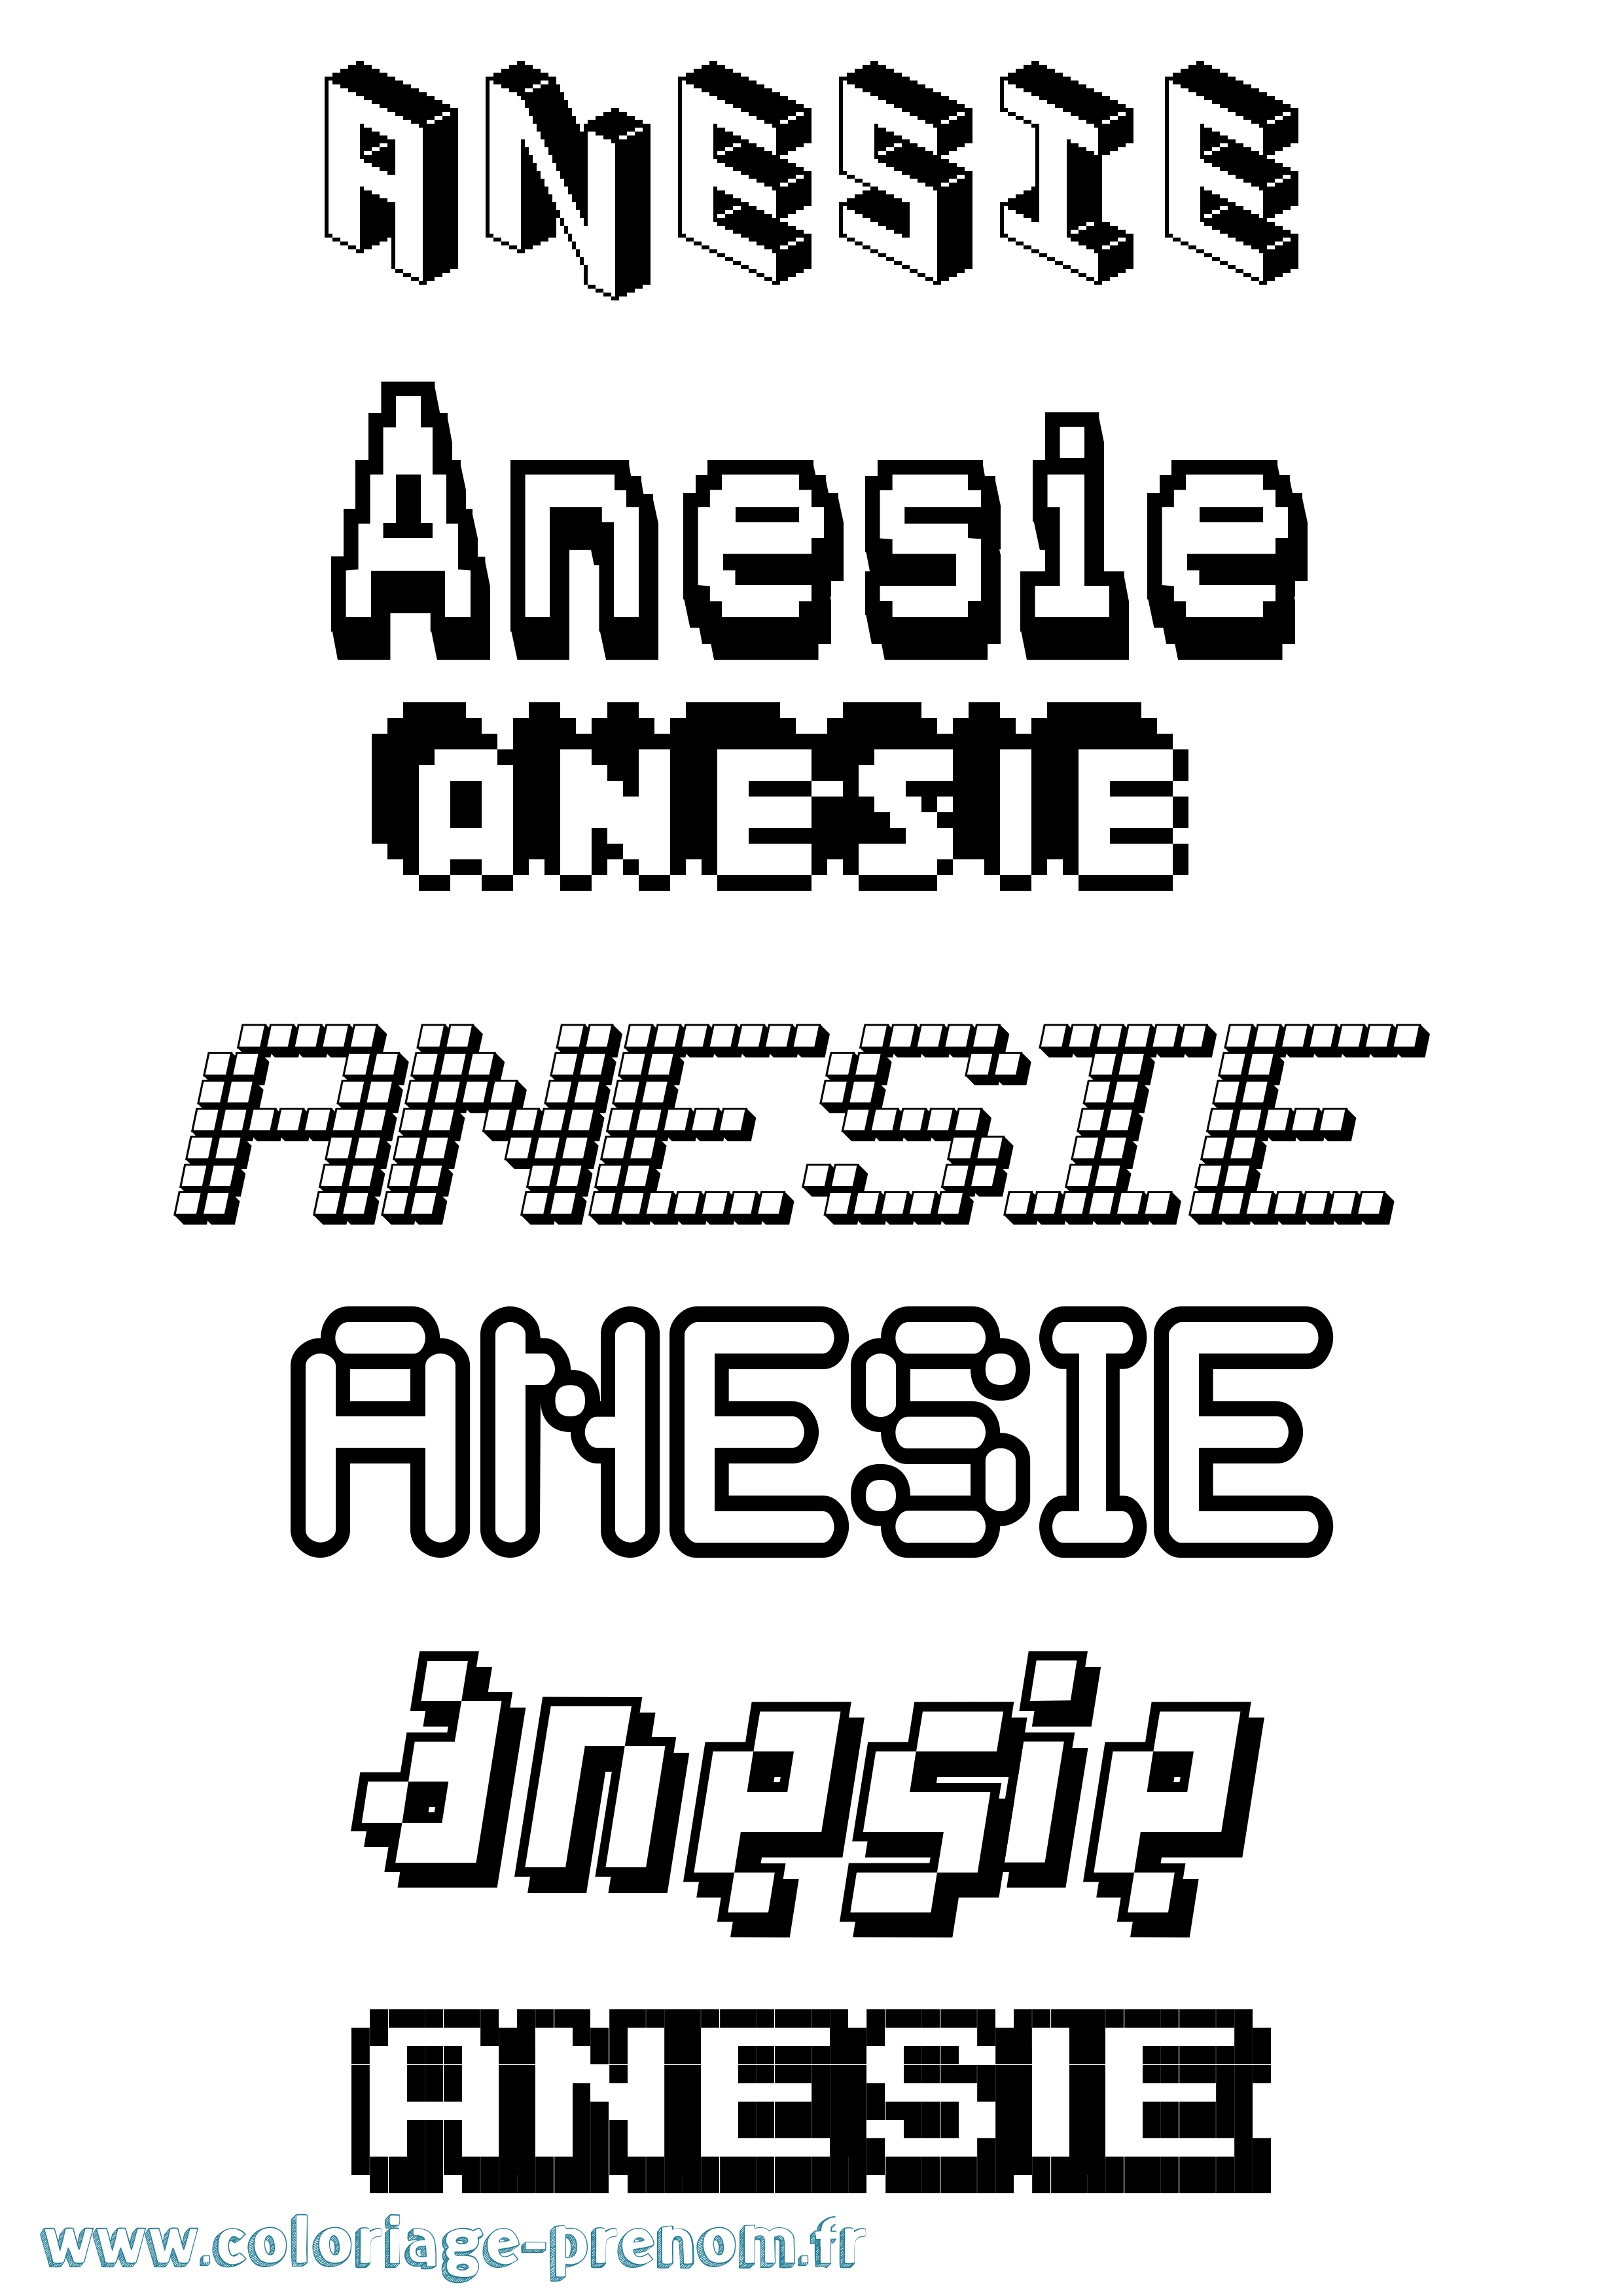 Coloriage prénom Anesie Pixel